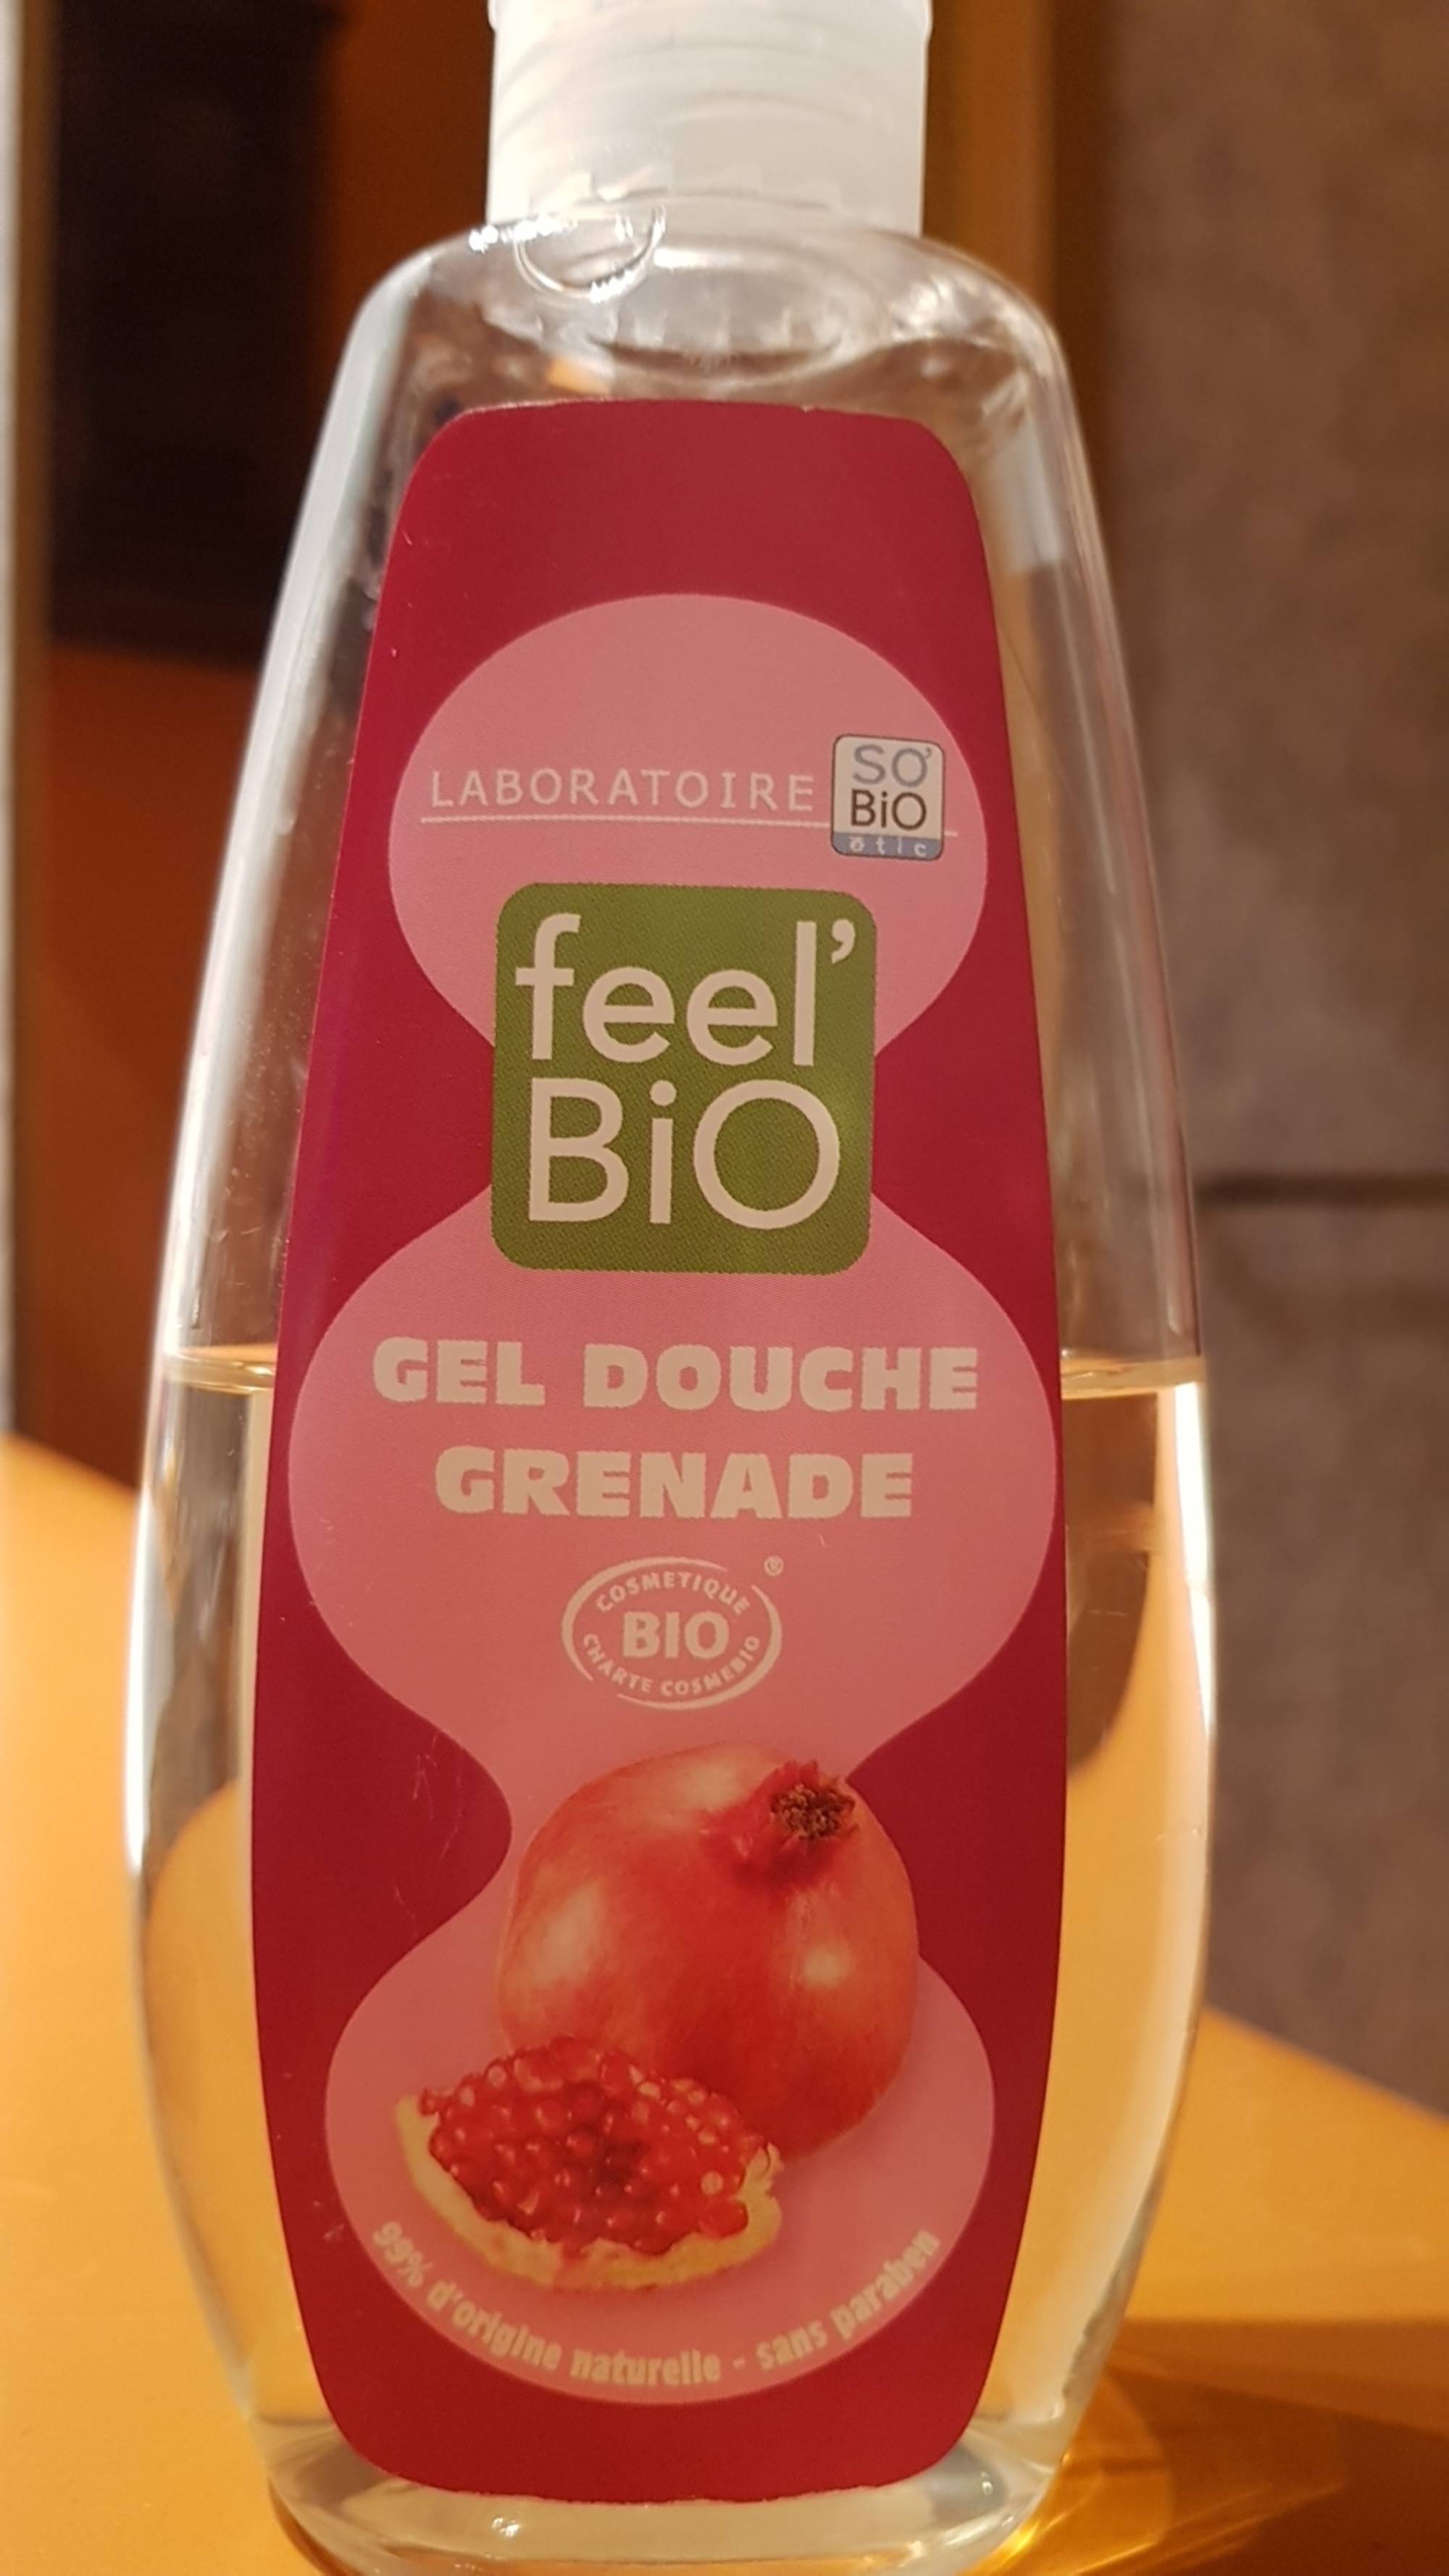 SO'BIO ÉTIC - Feel'Bio - Gel douche grenade